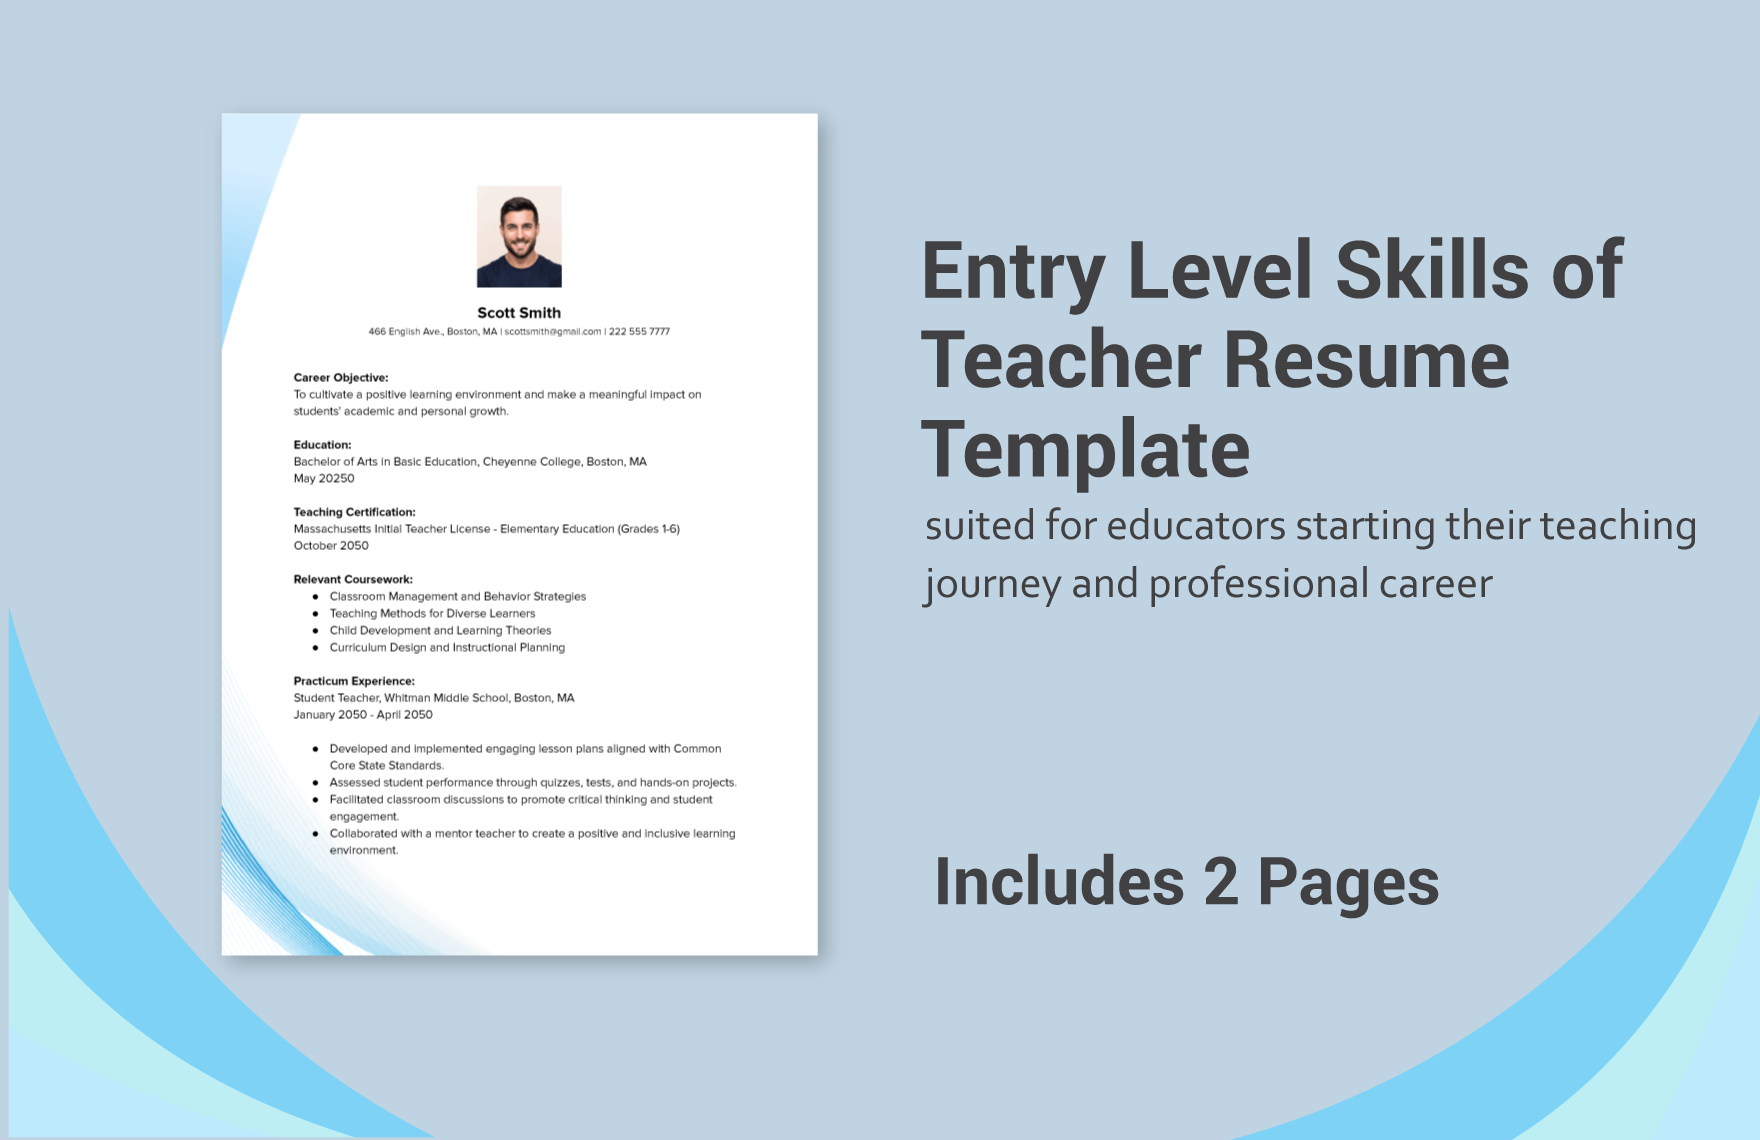 Entry Level Skills of Teacher Resume Template